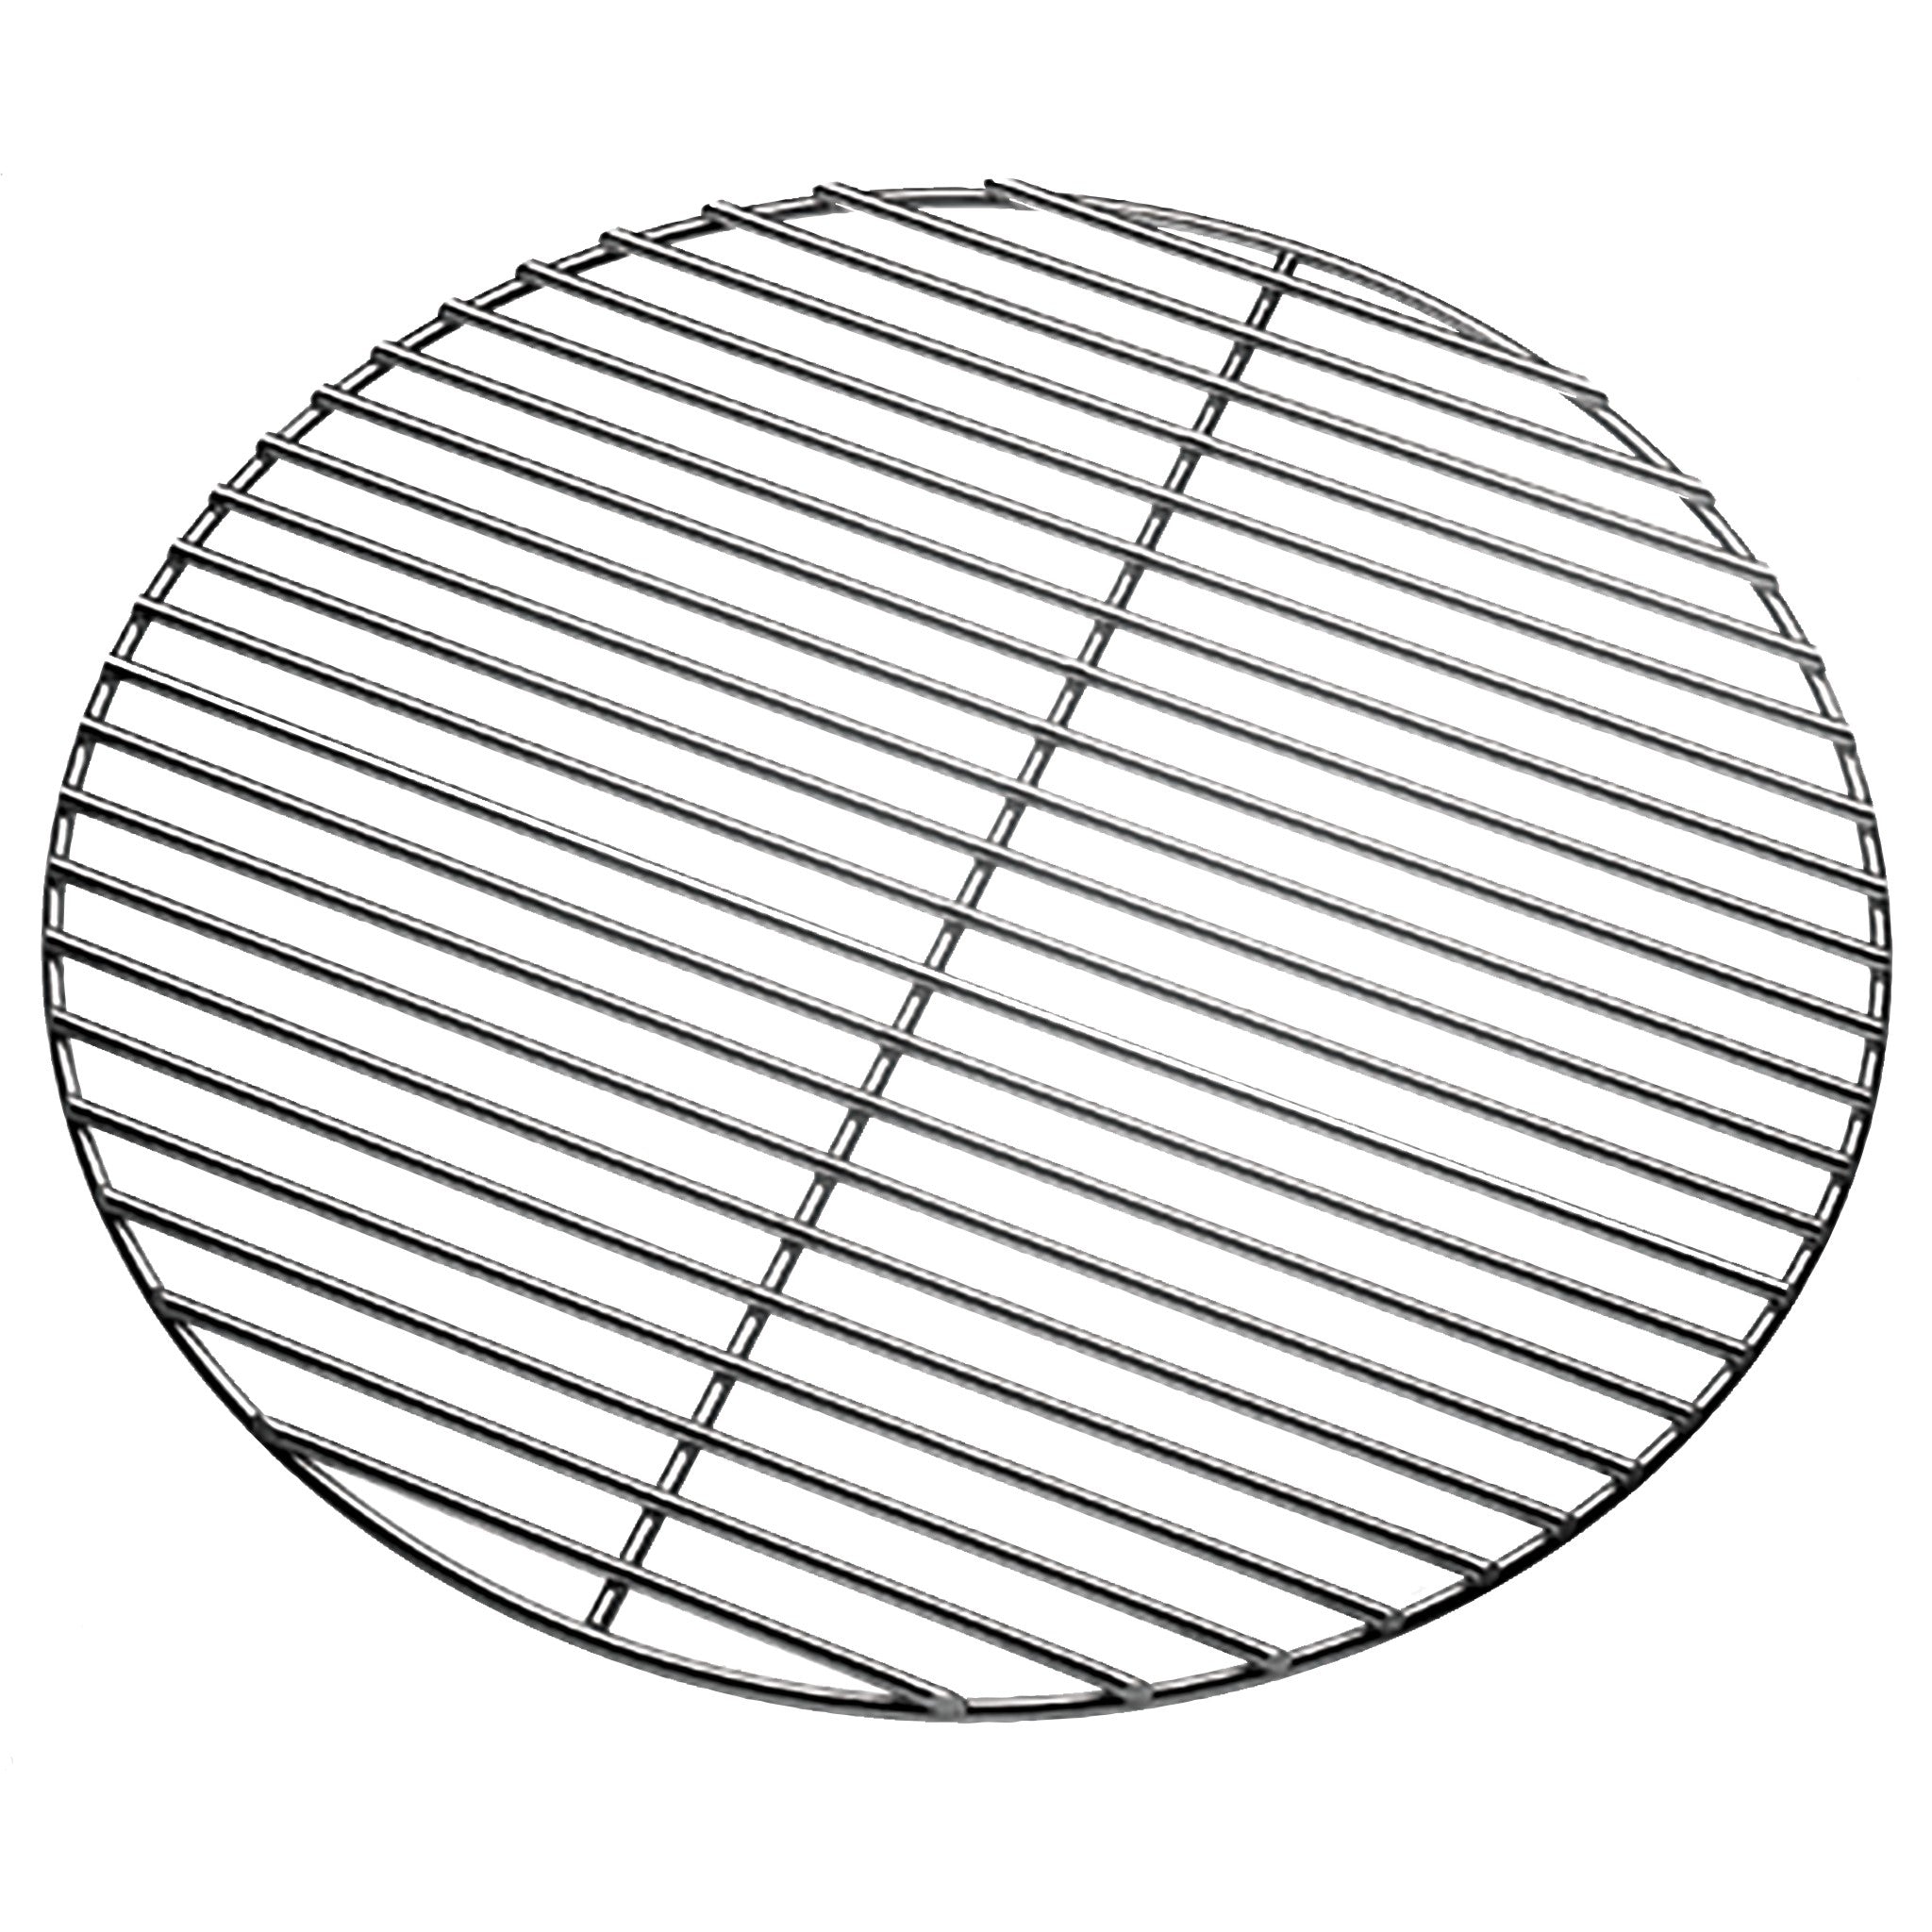 Grid diameter 54 cm